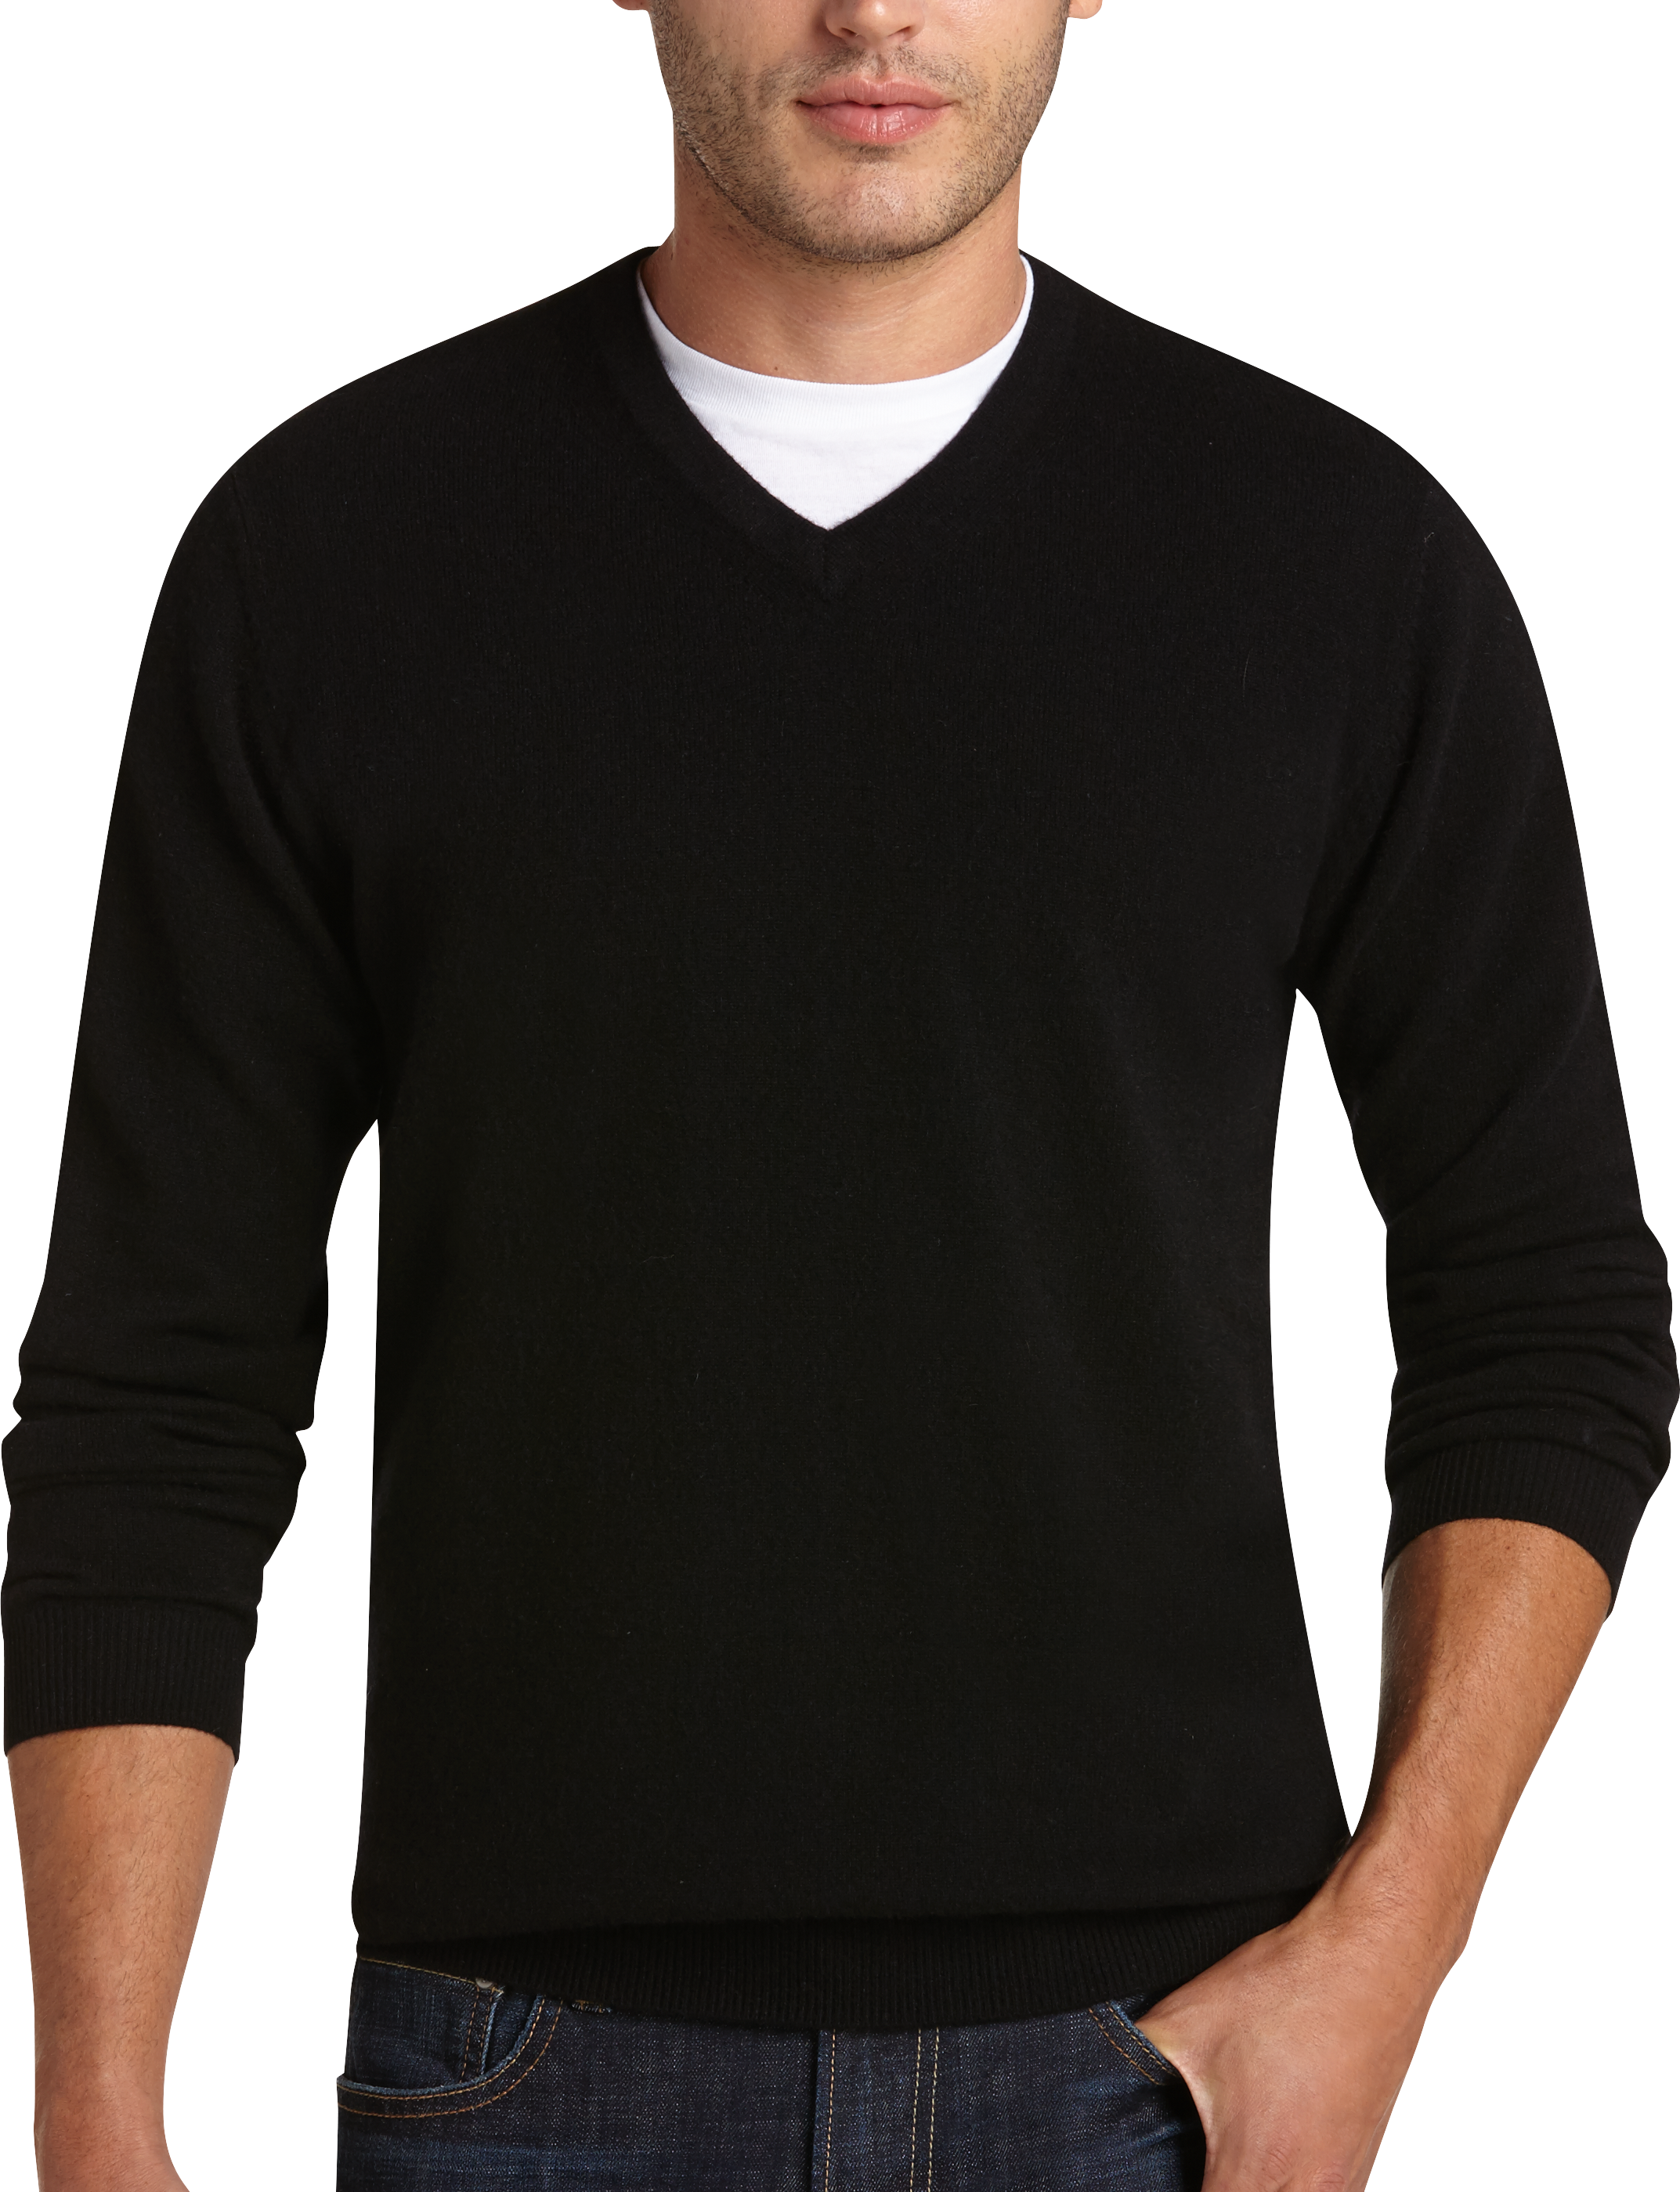 black v neck sweater